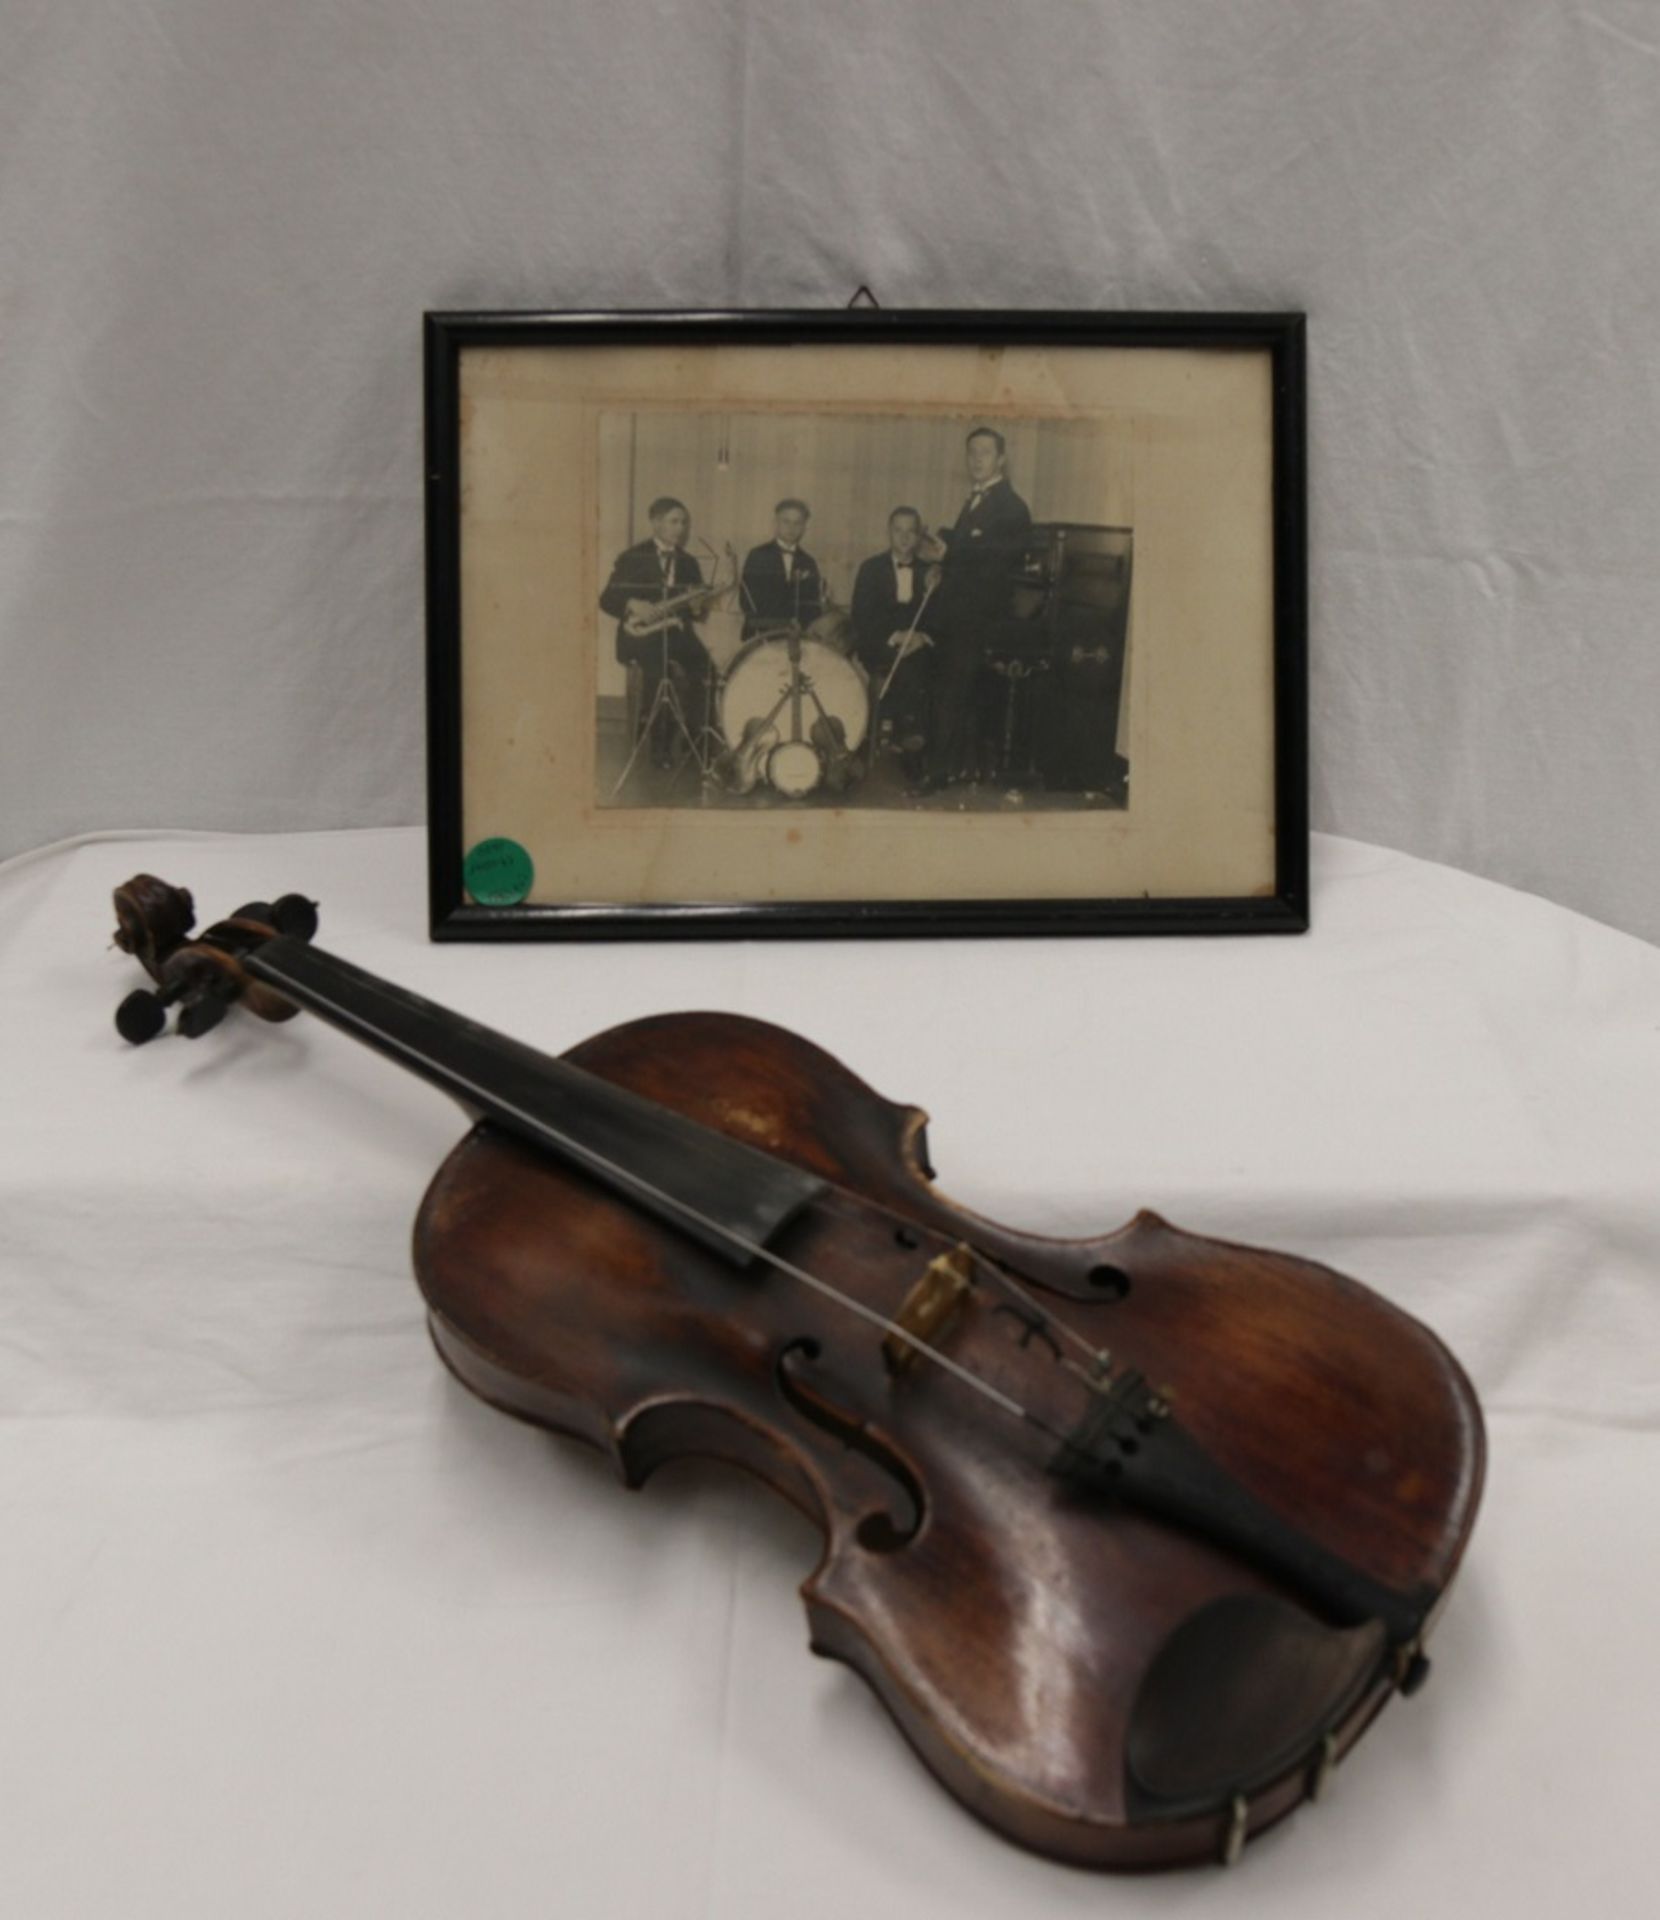 Solide alte Geige incl. Koffer und orig. Fotographie des Musikers 30er Jahre - Bild 16 aus 17